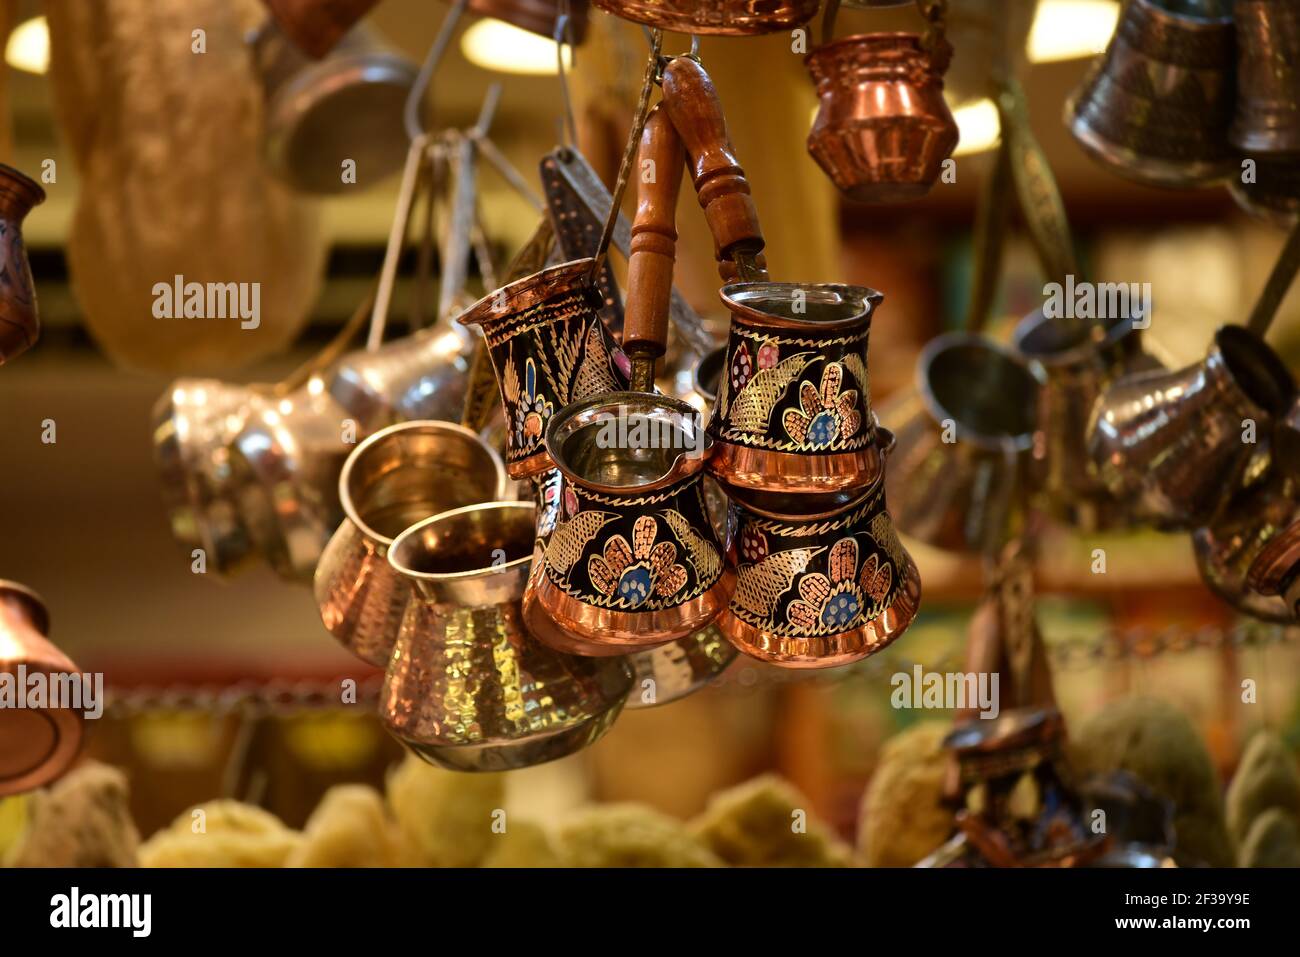 Traditionelle kupfertürkische Kaffeekannen wunderschön dekoriert. Istanbul, Türkei Stockfoto